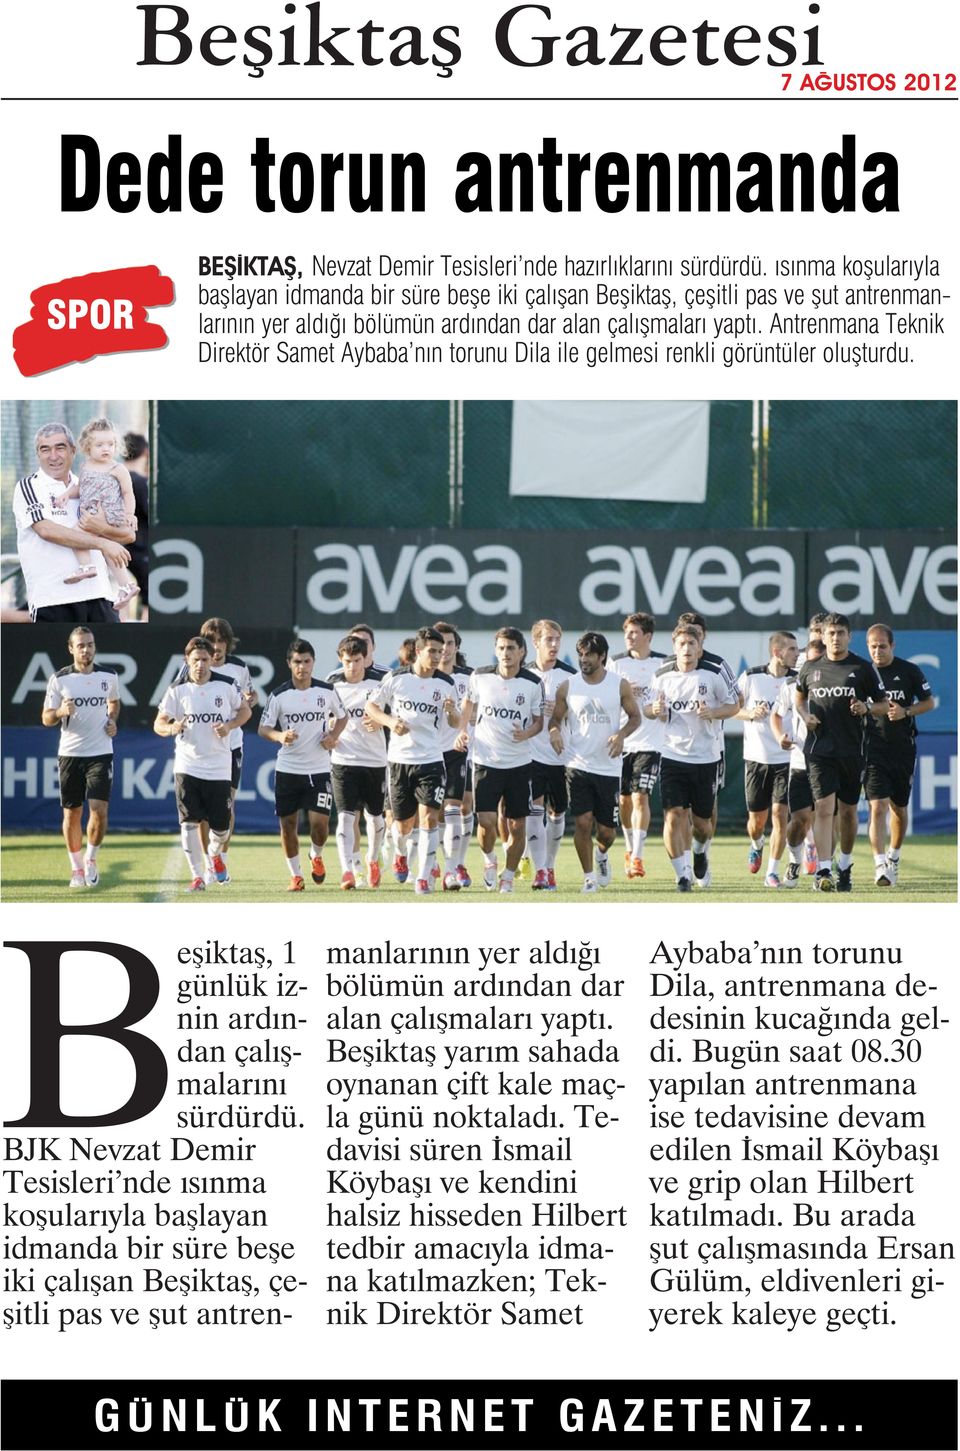 Antrenmana Teknik Direktör Samet Aybaba nın torunu Dila ile gelmesi renkli görüntüler oluşturdu. Beşiktaş, 1 günlük iznin ardından çalışmalarını sürdürdü.